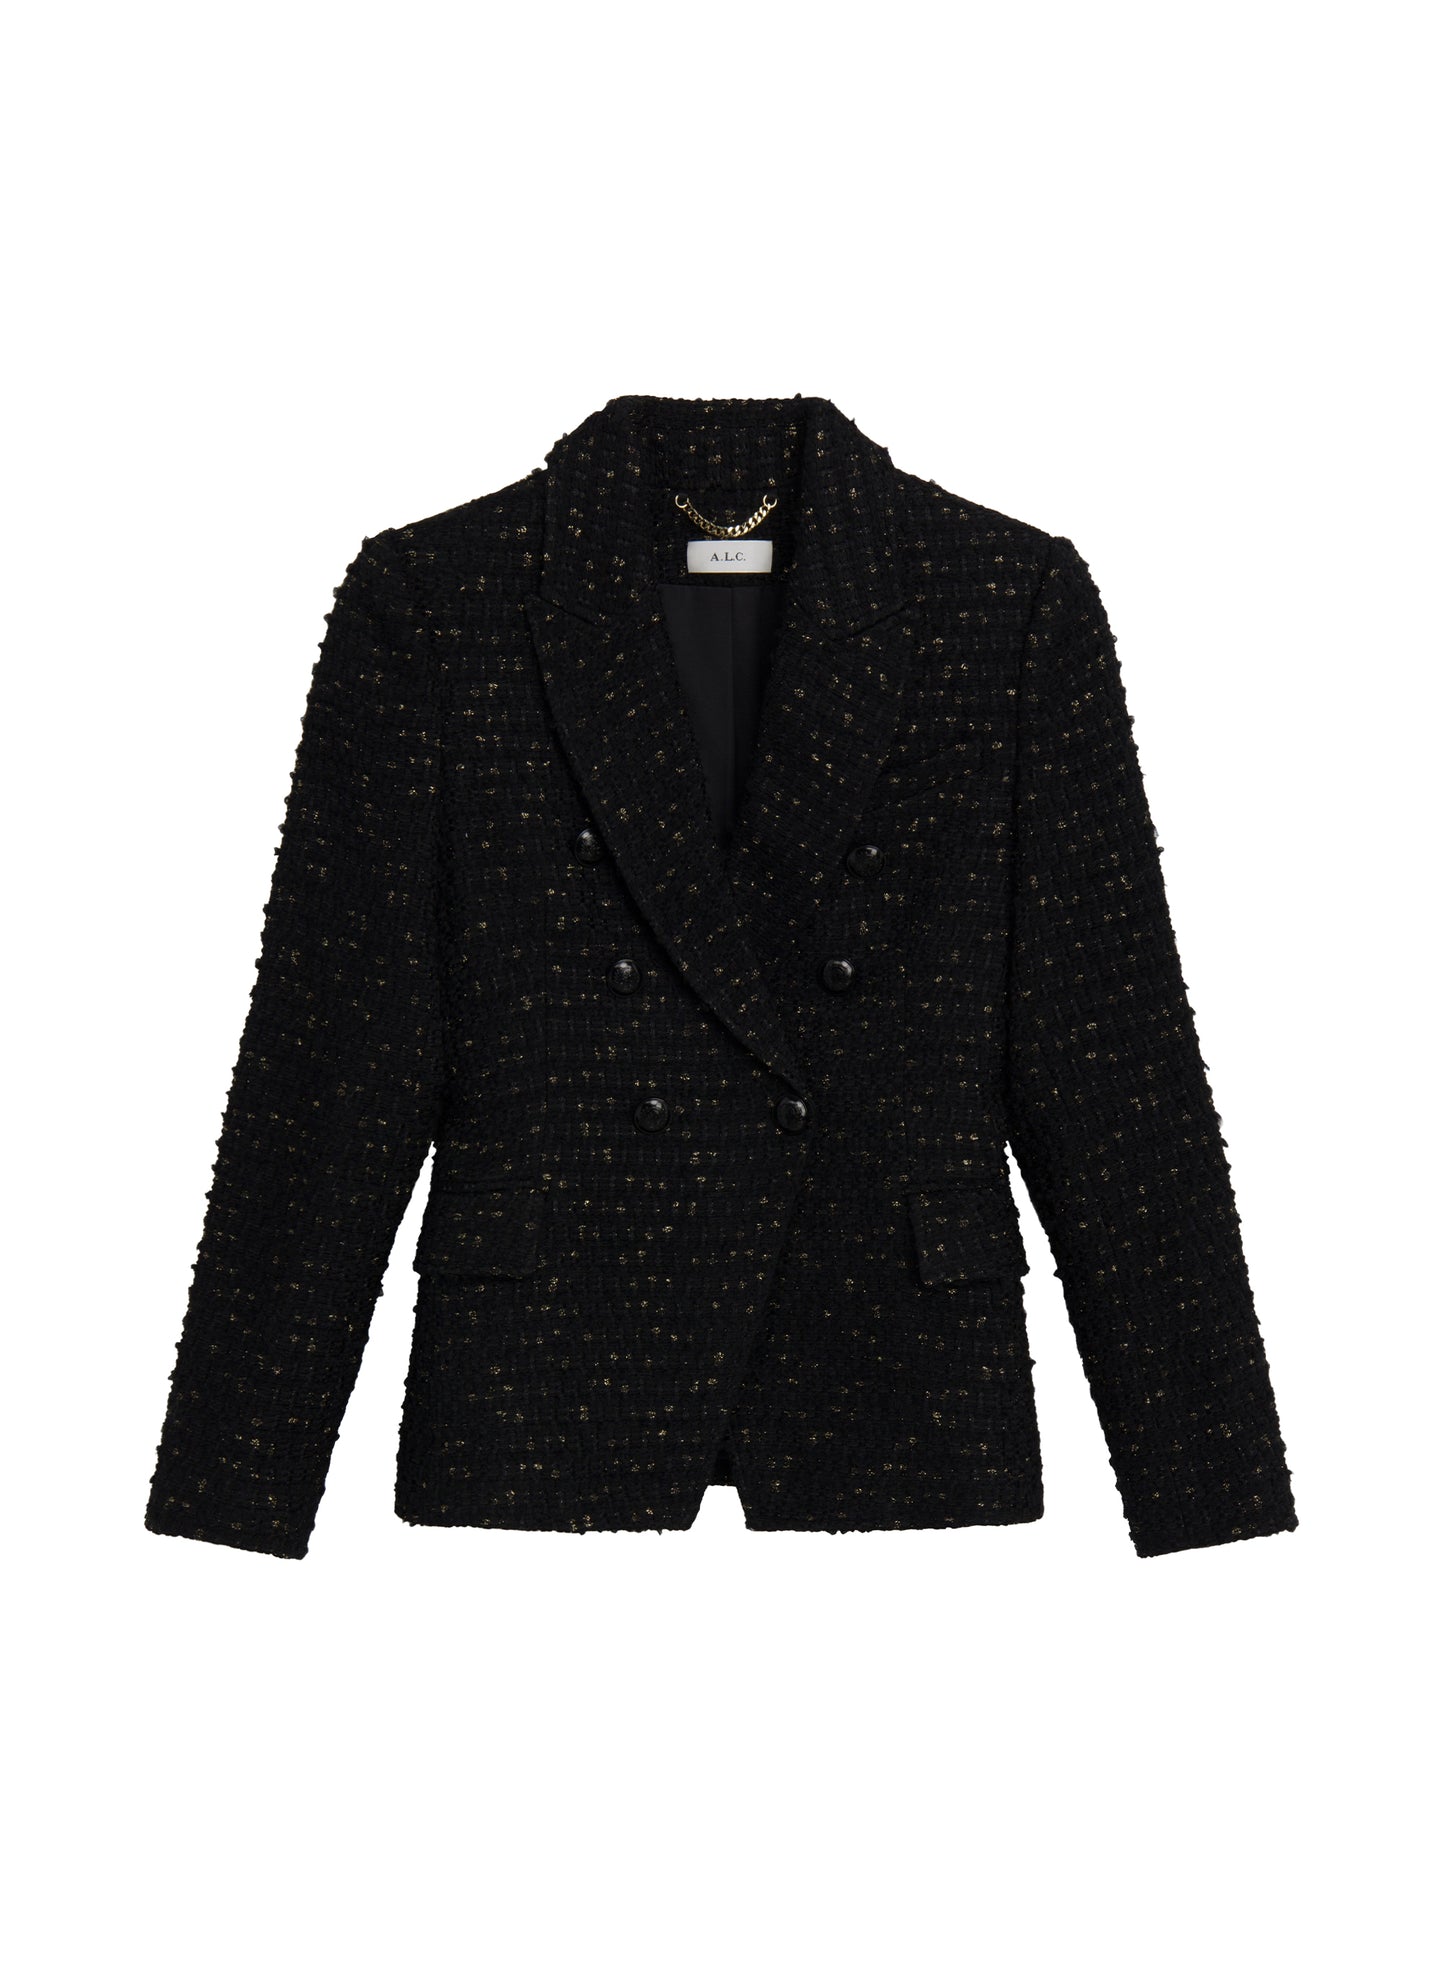 Chelsea Lurex Tweed Jacket